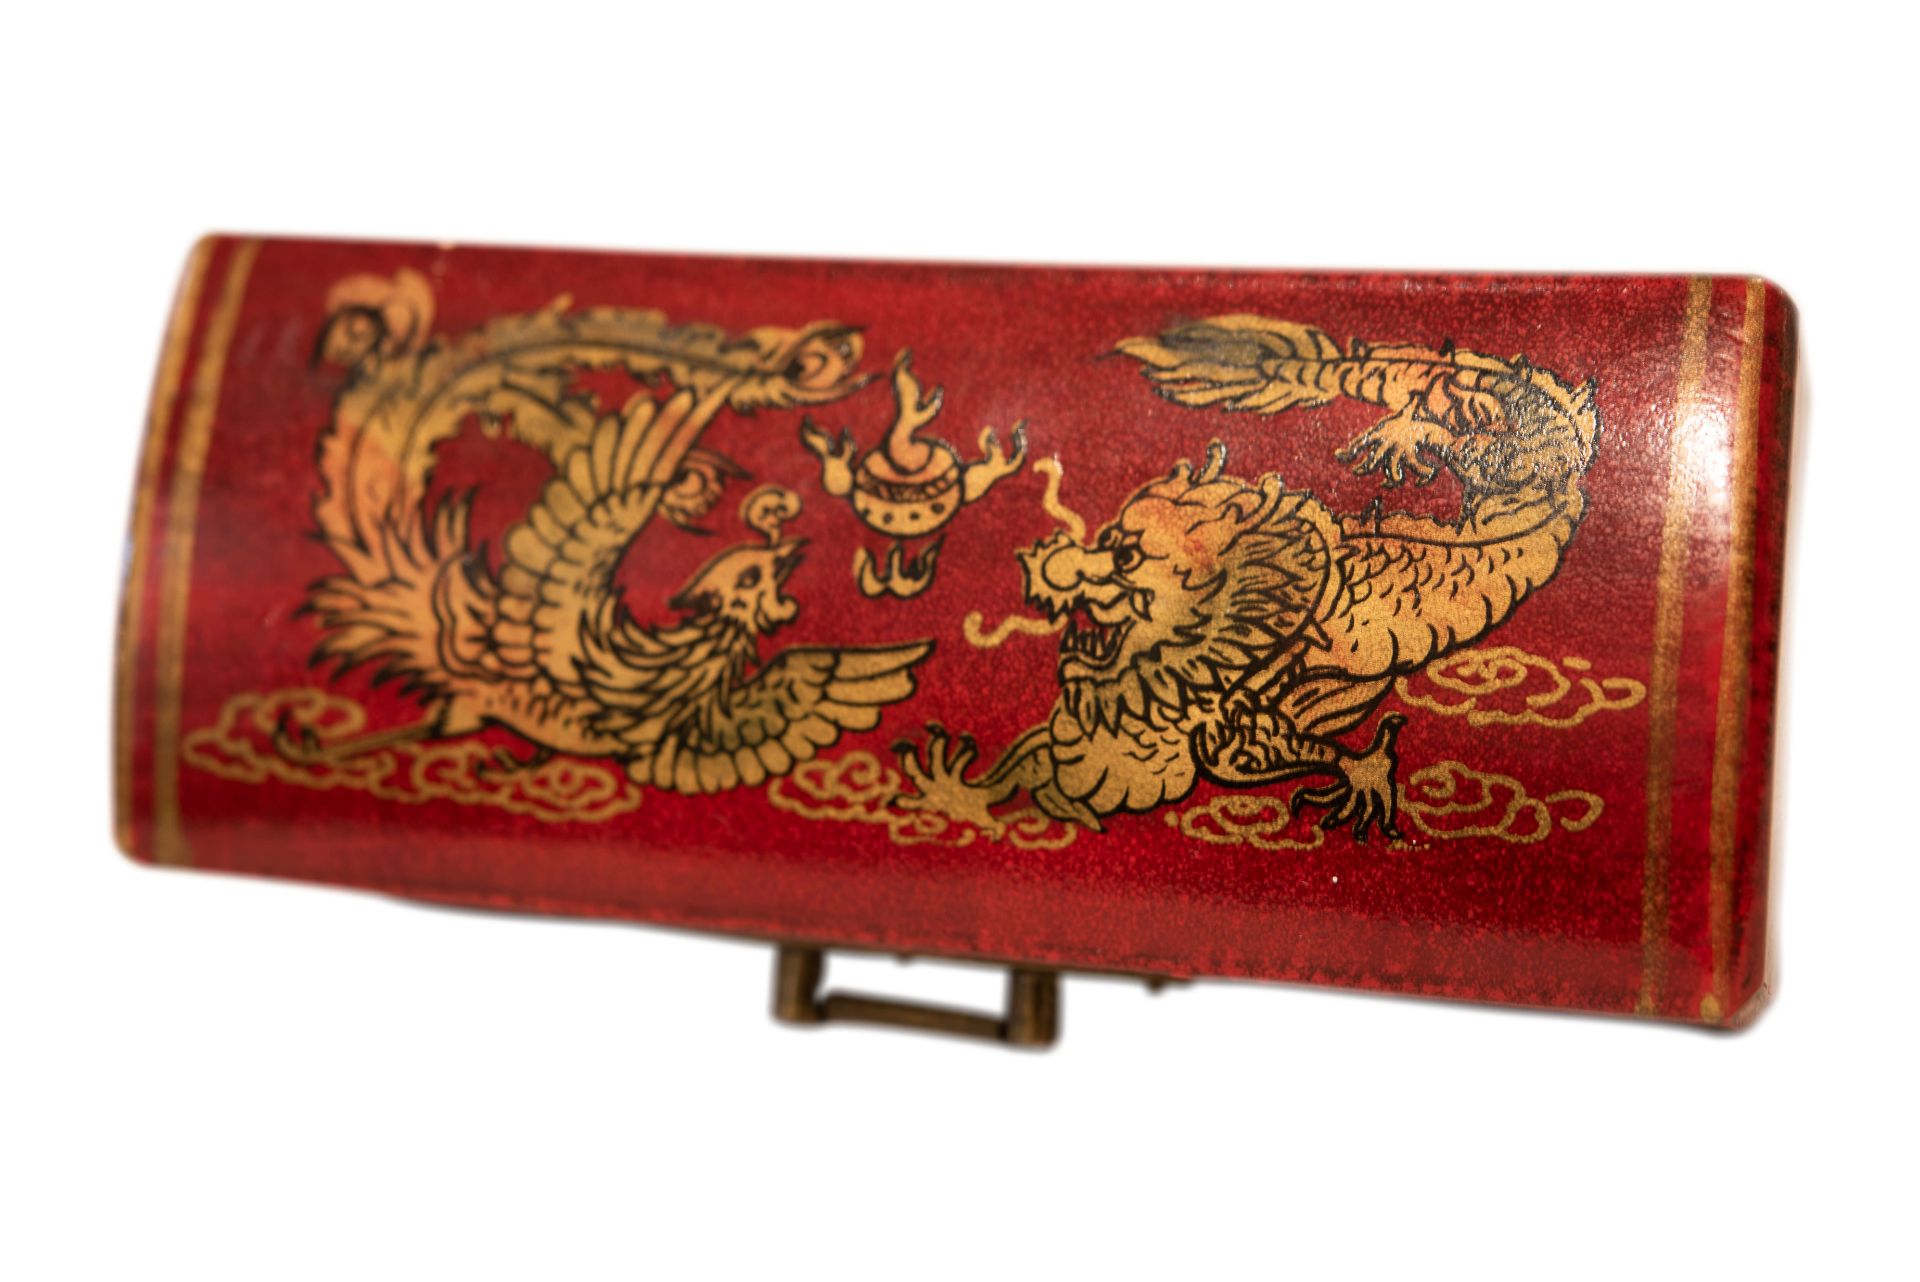 Chinesische Schatulle | Chinese casket